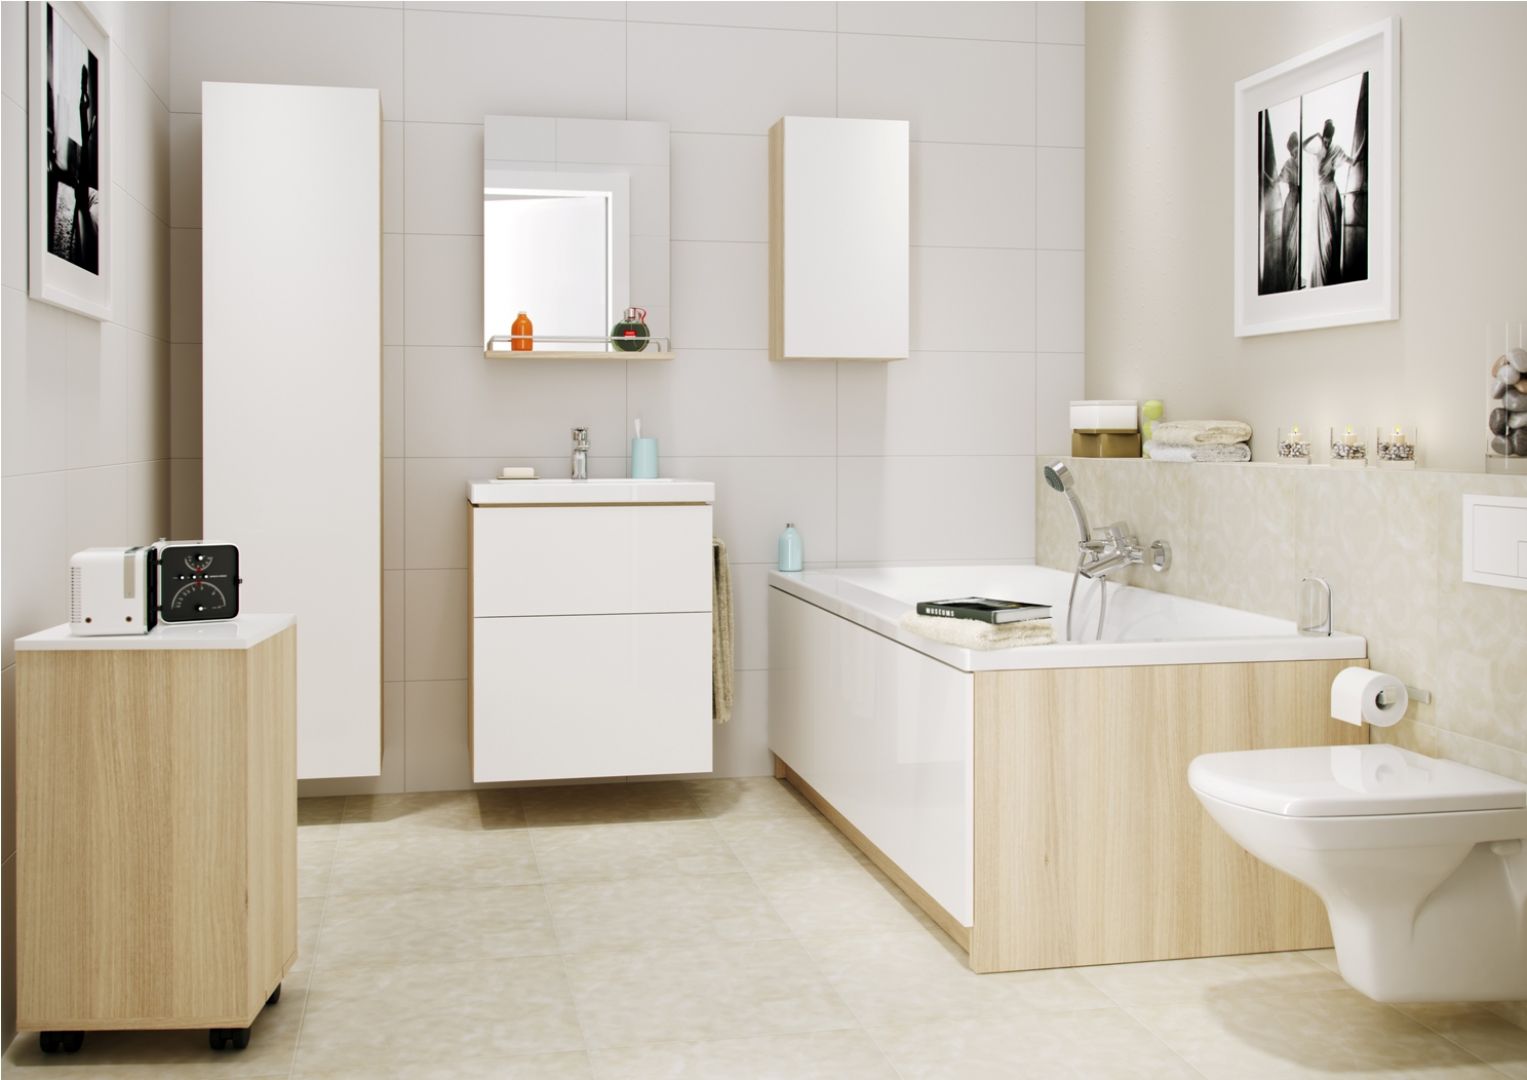 Meble łazienkowe z kolekcji Smart. Białe fronty ładnie łączą się z drewnem. Fot. Cersanit